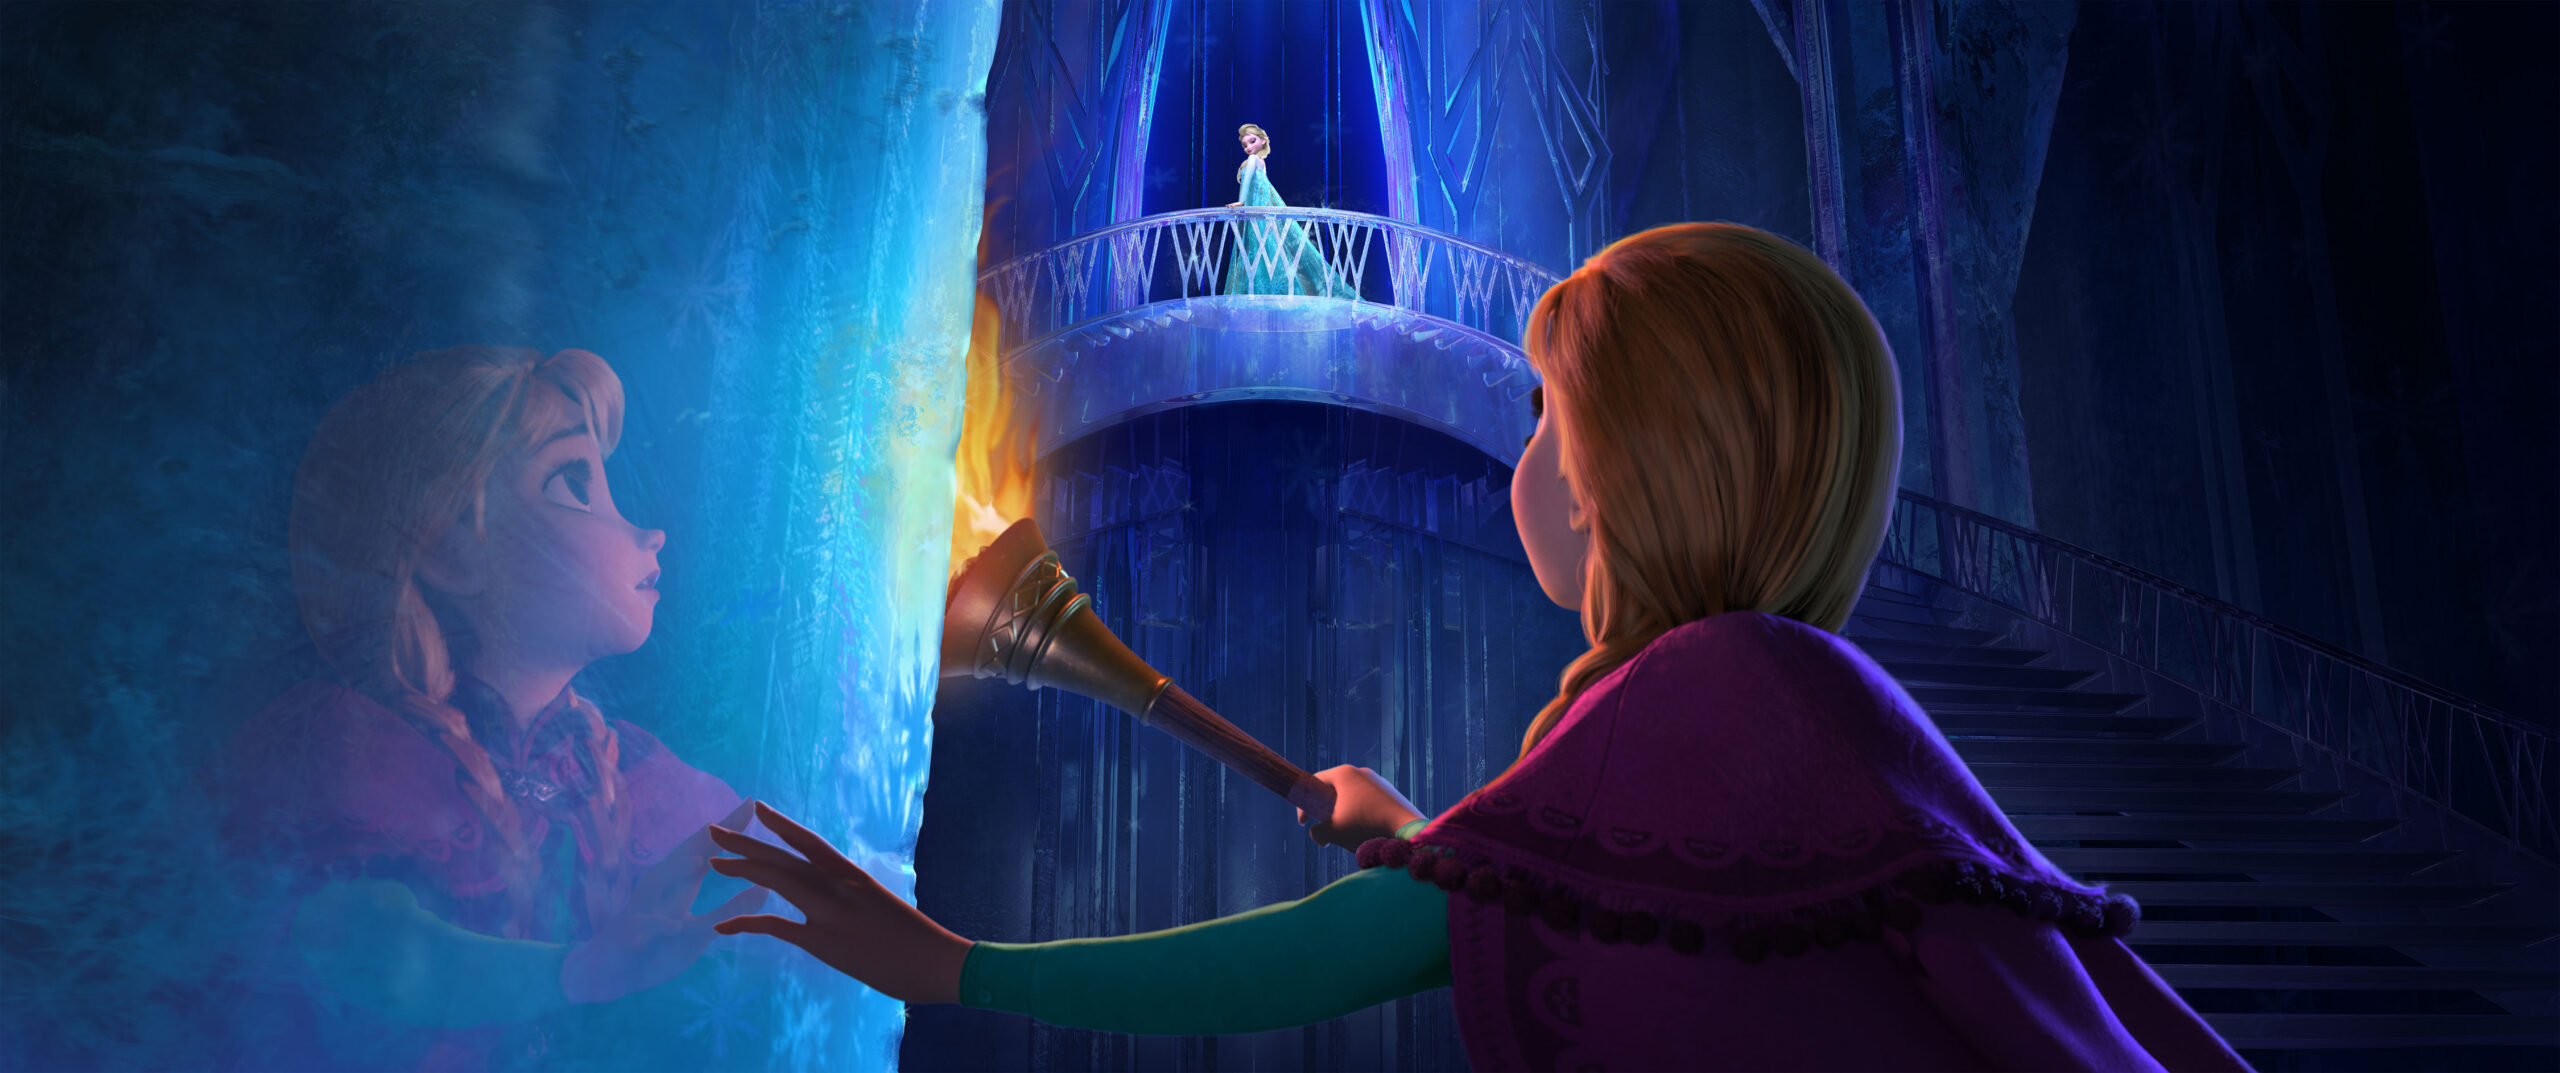 Reine des neiges 2 : le film d'animation le plus rentable de l